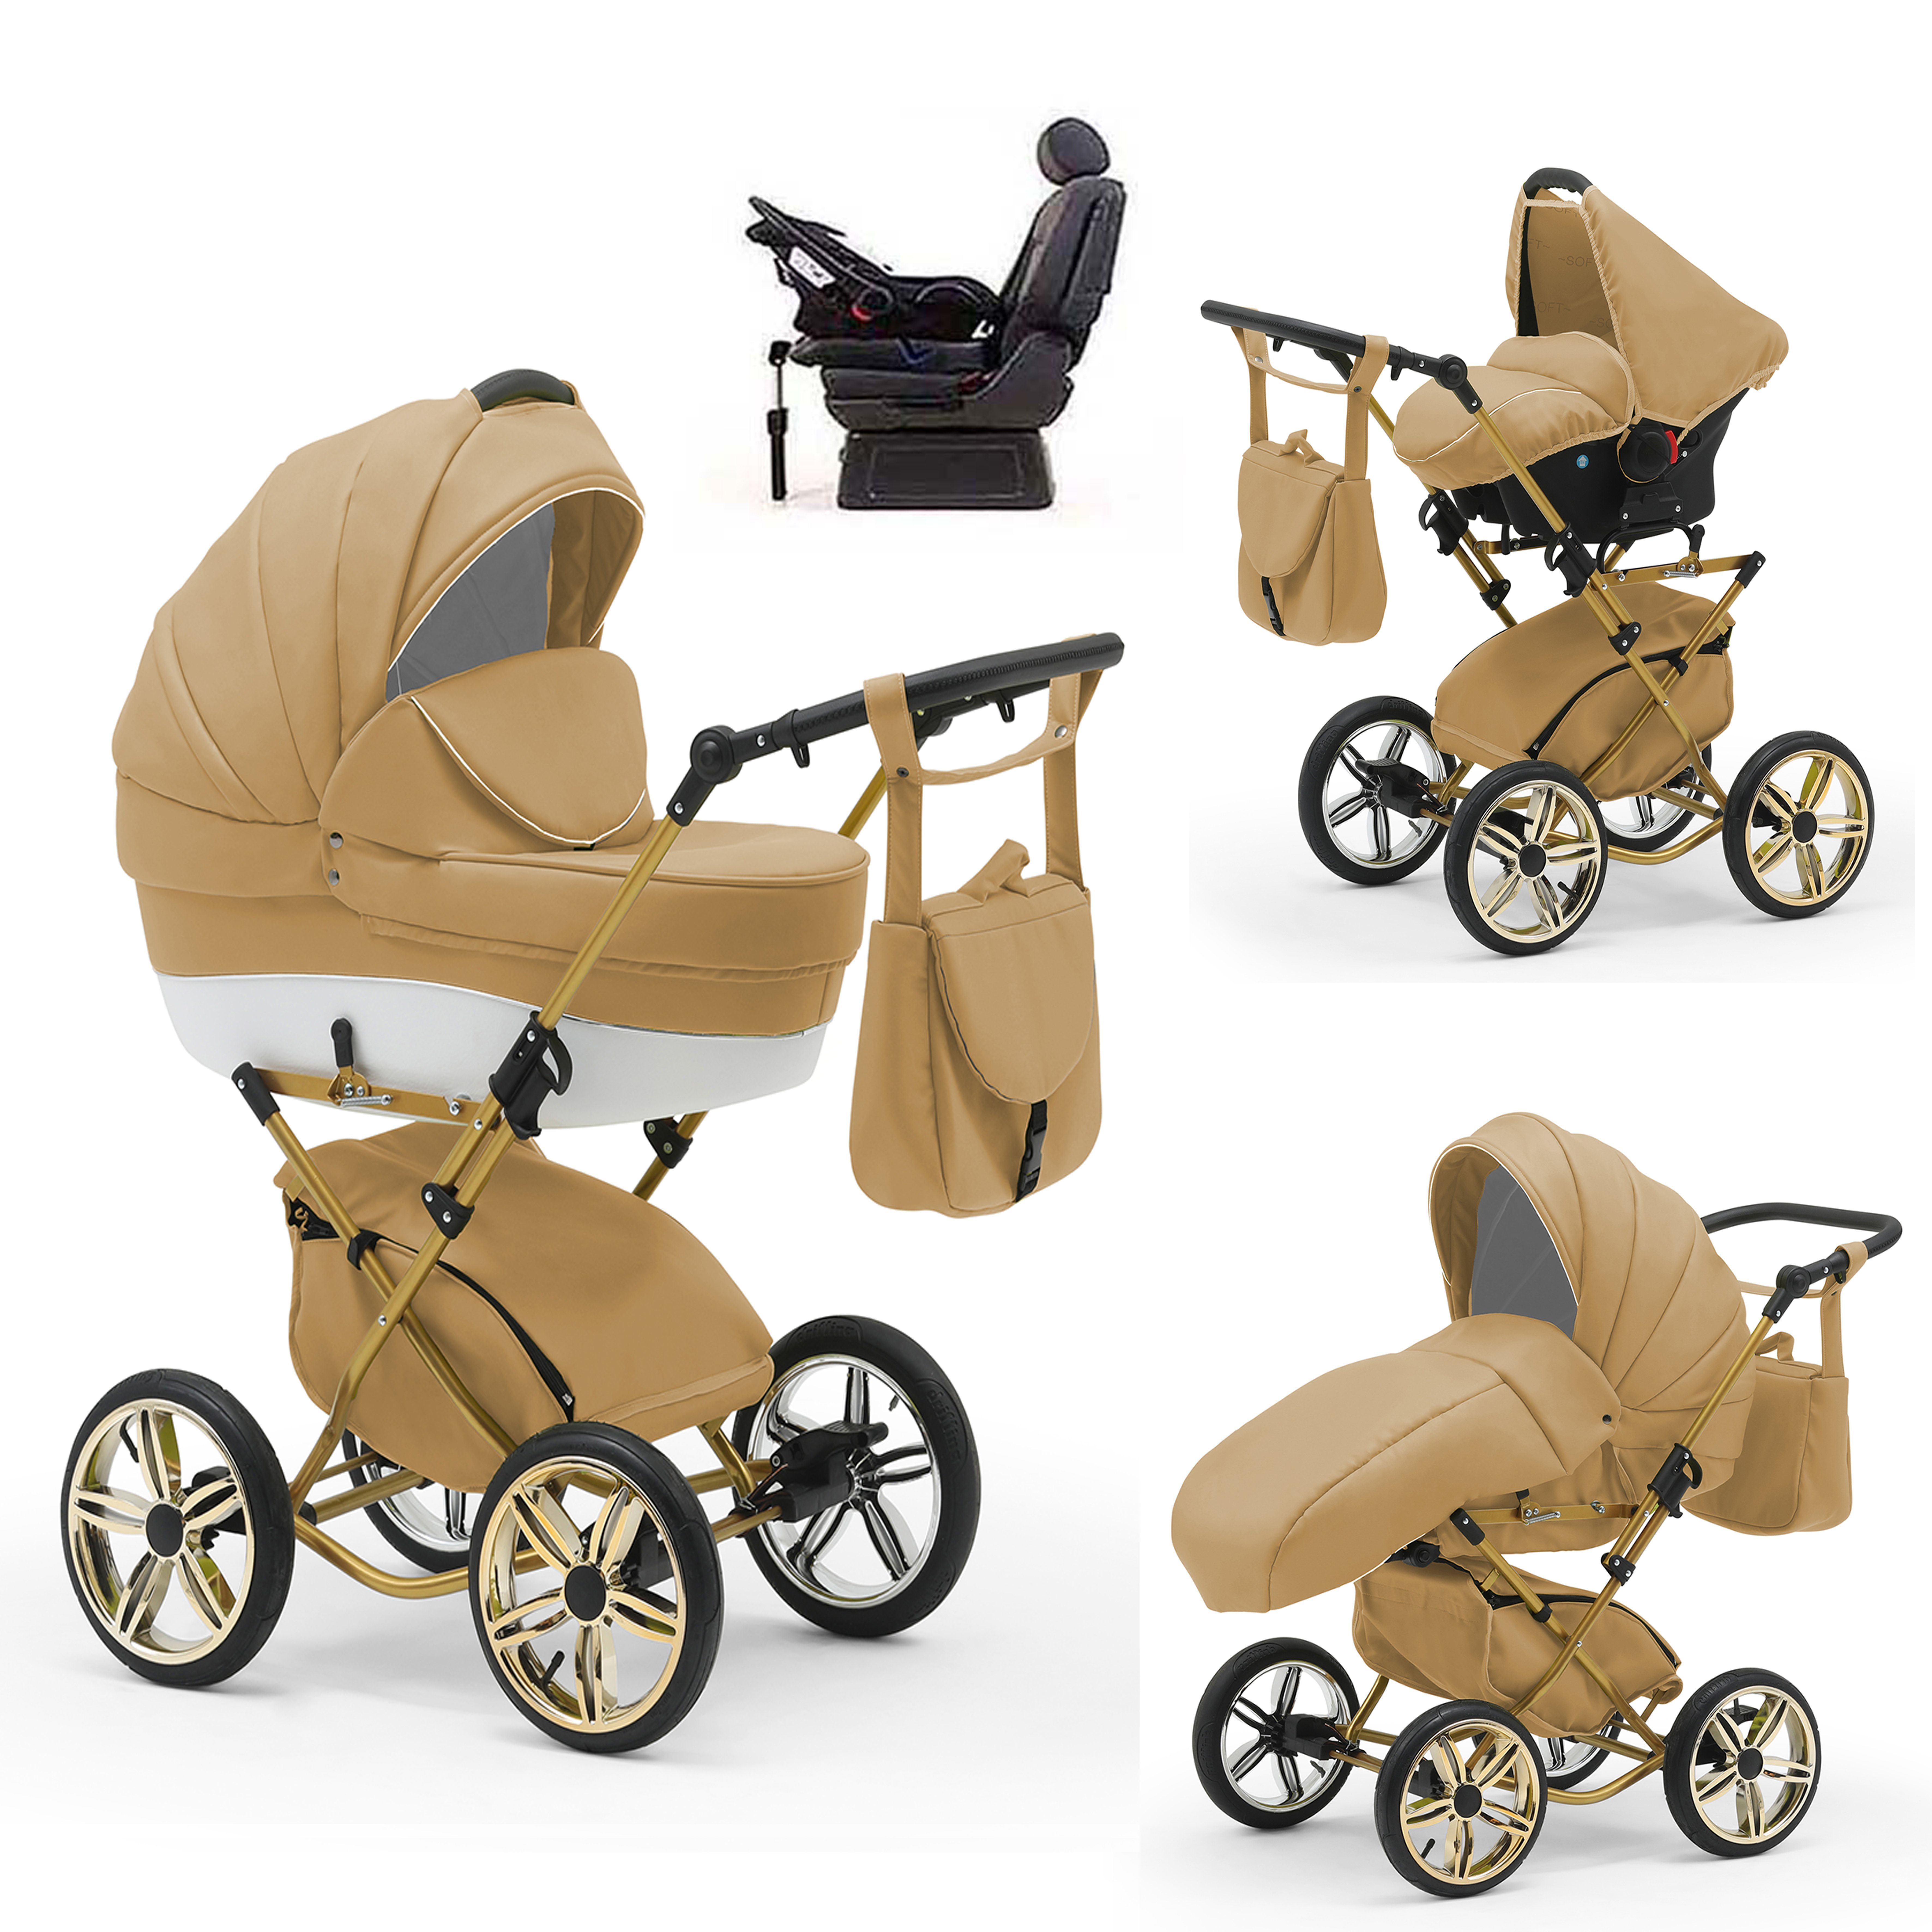 babies-on-wheels Kombi-Kinderwagen Sorento 4 in 1 inkl. Autositz und Iso Base - 14 Teile - in 10 Designs Beige-Weiß | Kombikinderwagen